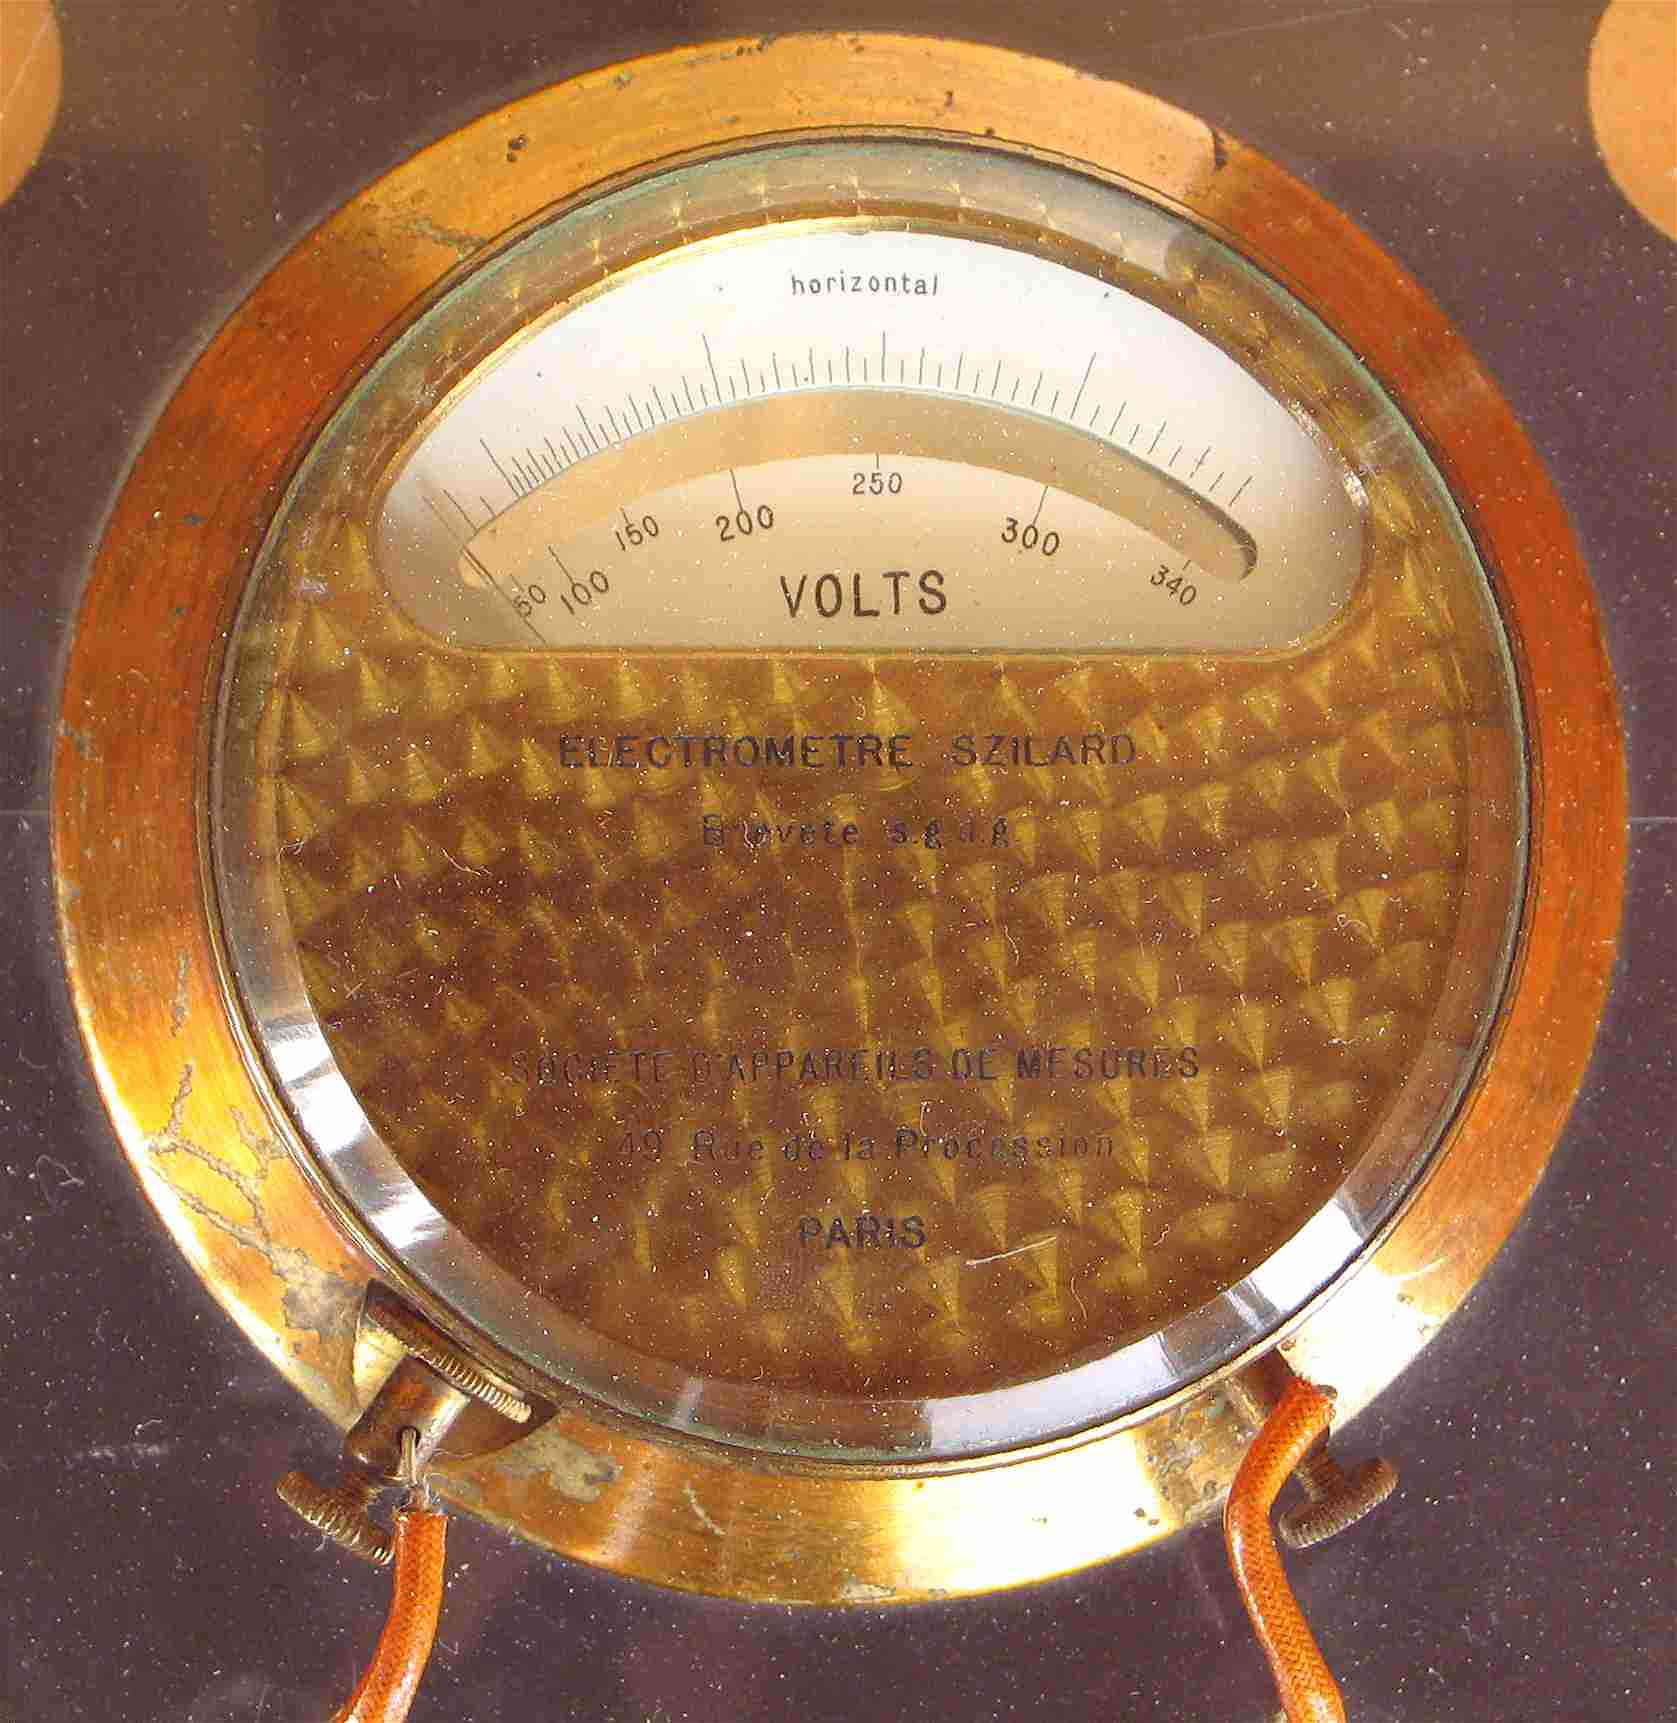 Voltmètre électrostatique
(selon [Bela] Szilard; 100 V à 340 V)